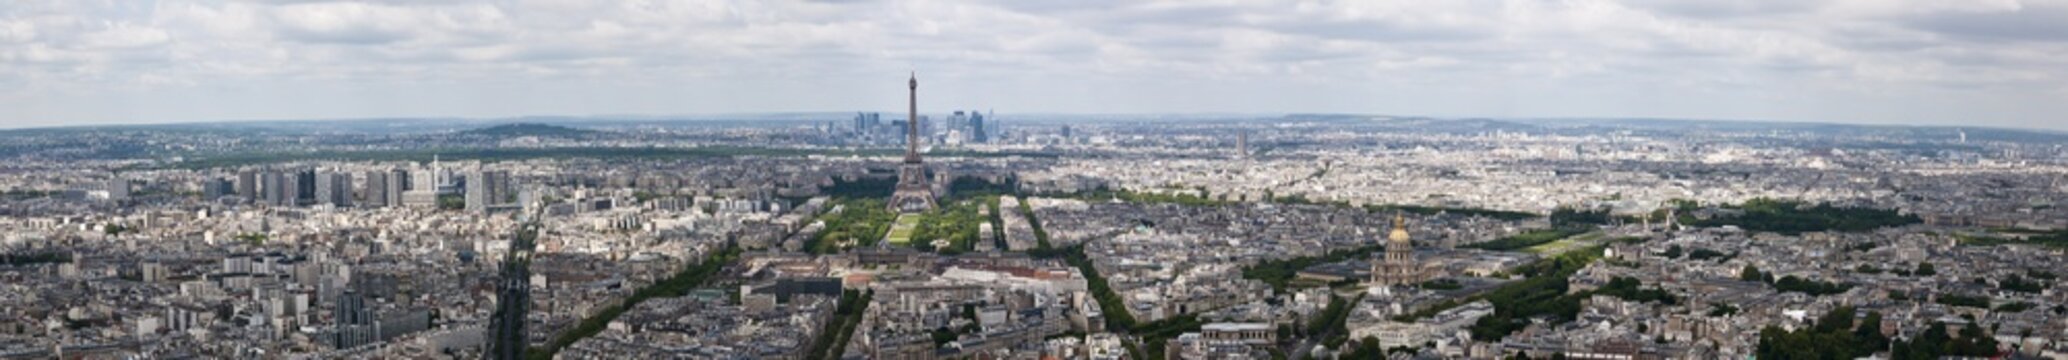 Paris von oben, Frankreich, Luftaufnahme